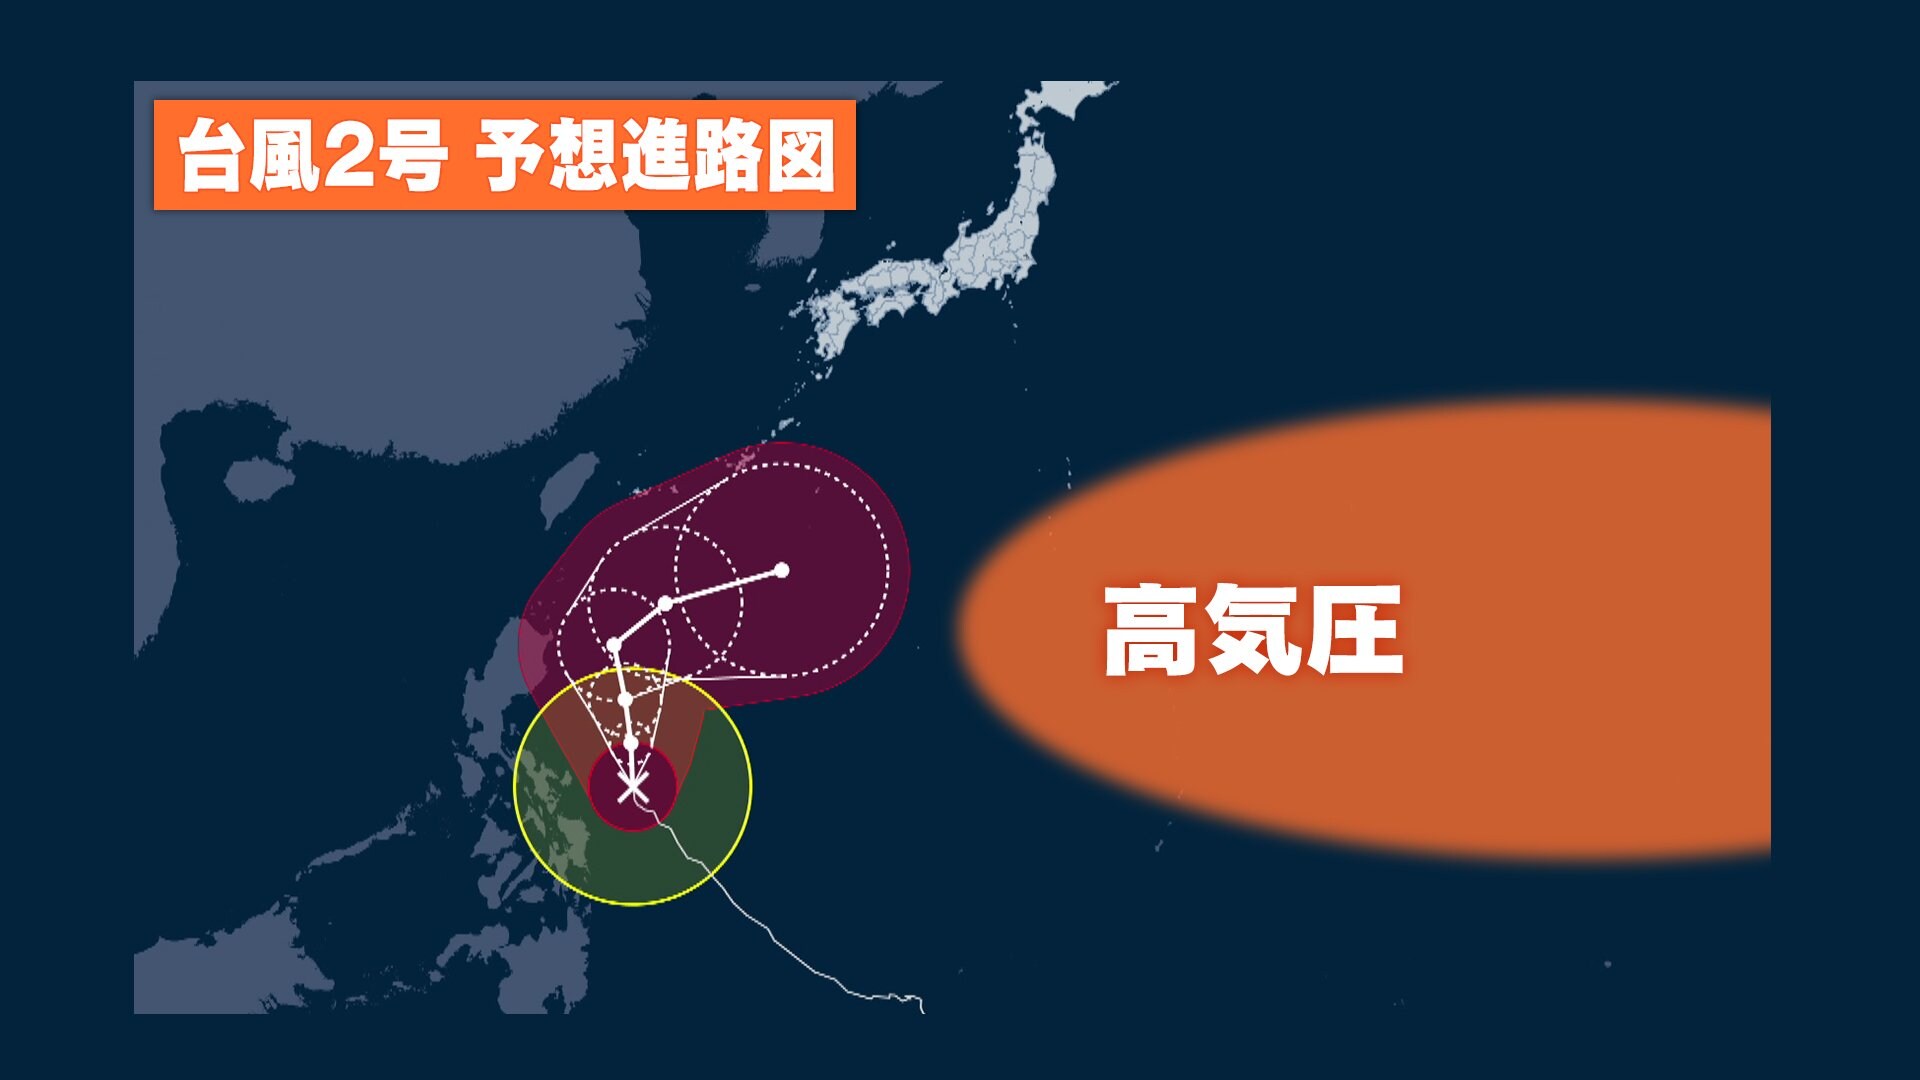 スーパー台風 Super Typhoon Japaneseclass Jp